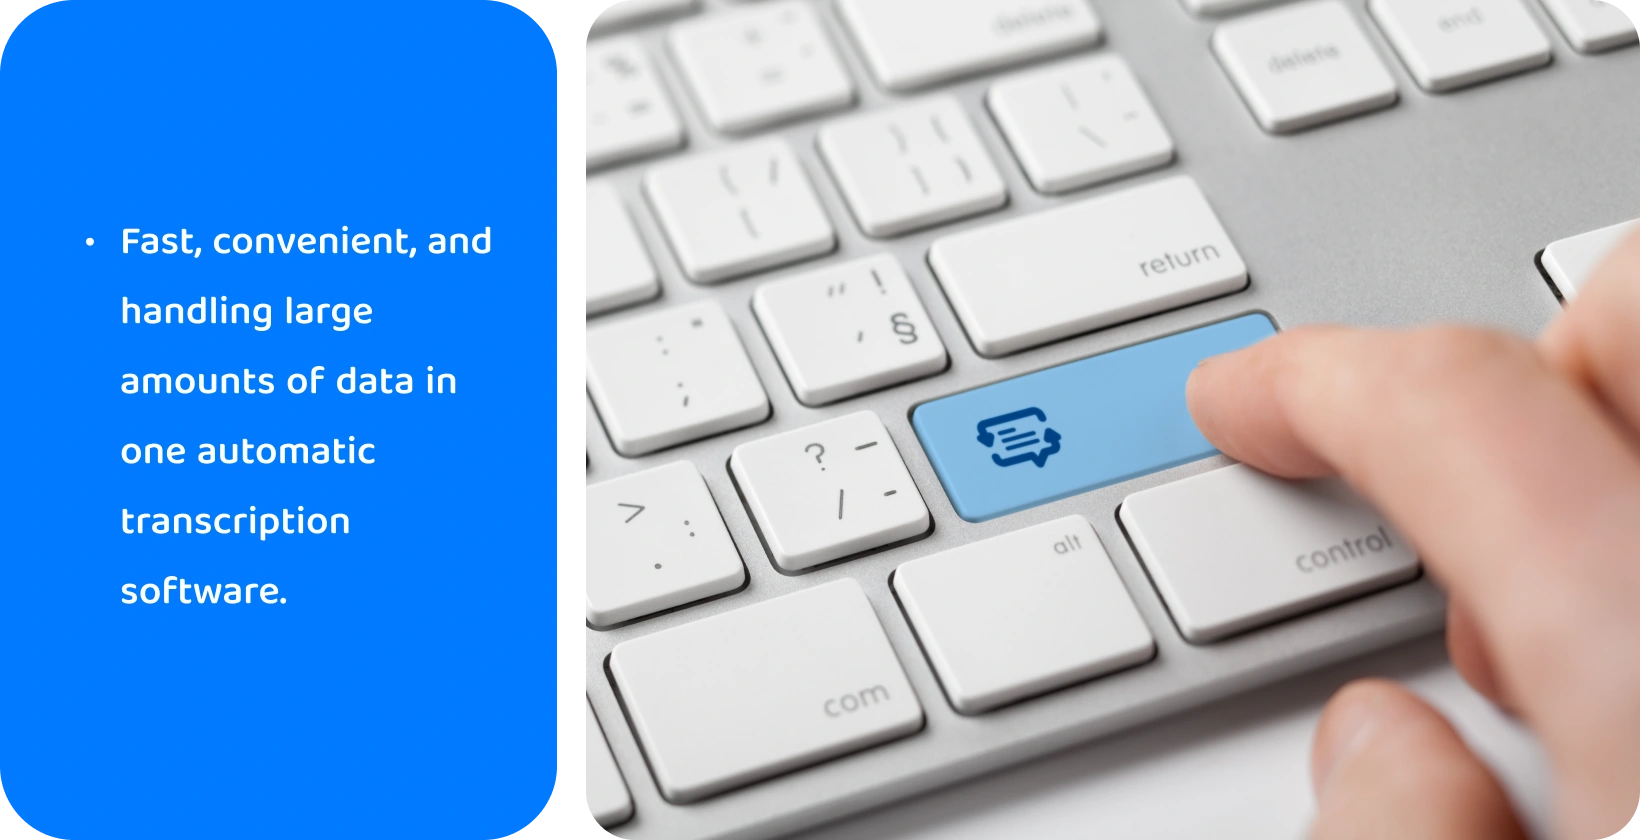 Nhấn ngón tay vào một phím tùy chỉnh với biểu tượng phiên âm, tượng trưng cho việc xử lý dữ liệu hiệu quả bằng phần mềm.